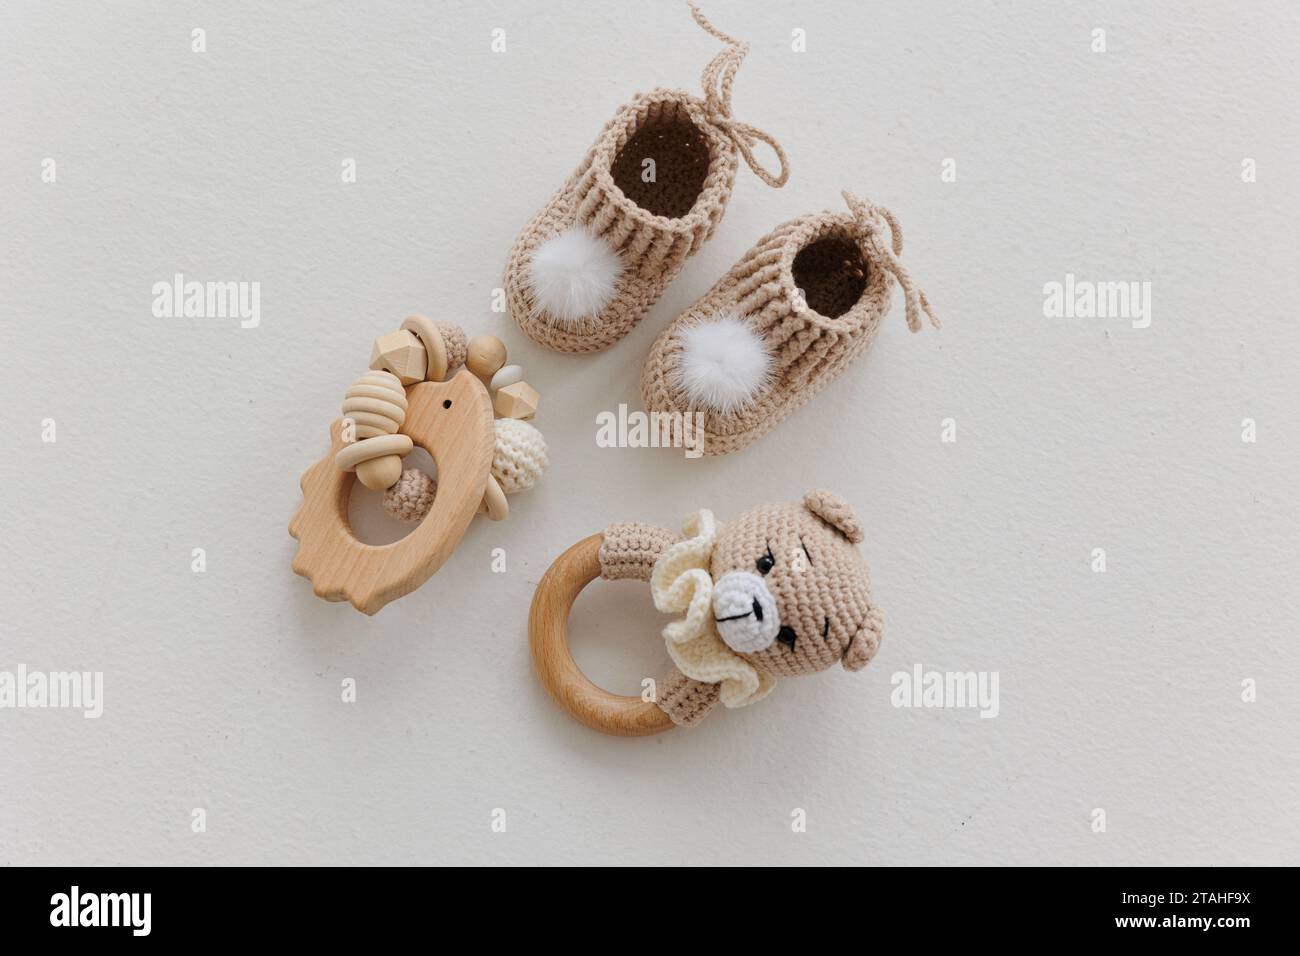 Stivaletti neonati e battiti in legno su sfondo bianco. Concetto di aspettare che nasca un bambino. Immagine isolata. Foto Stock